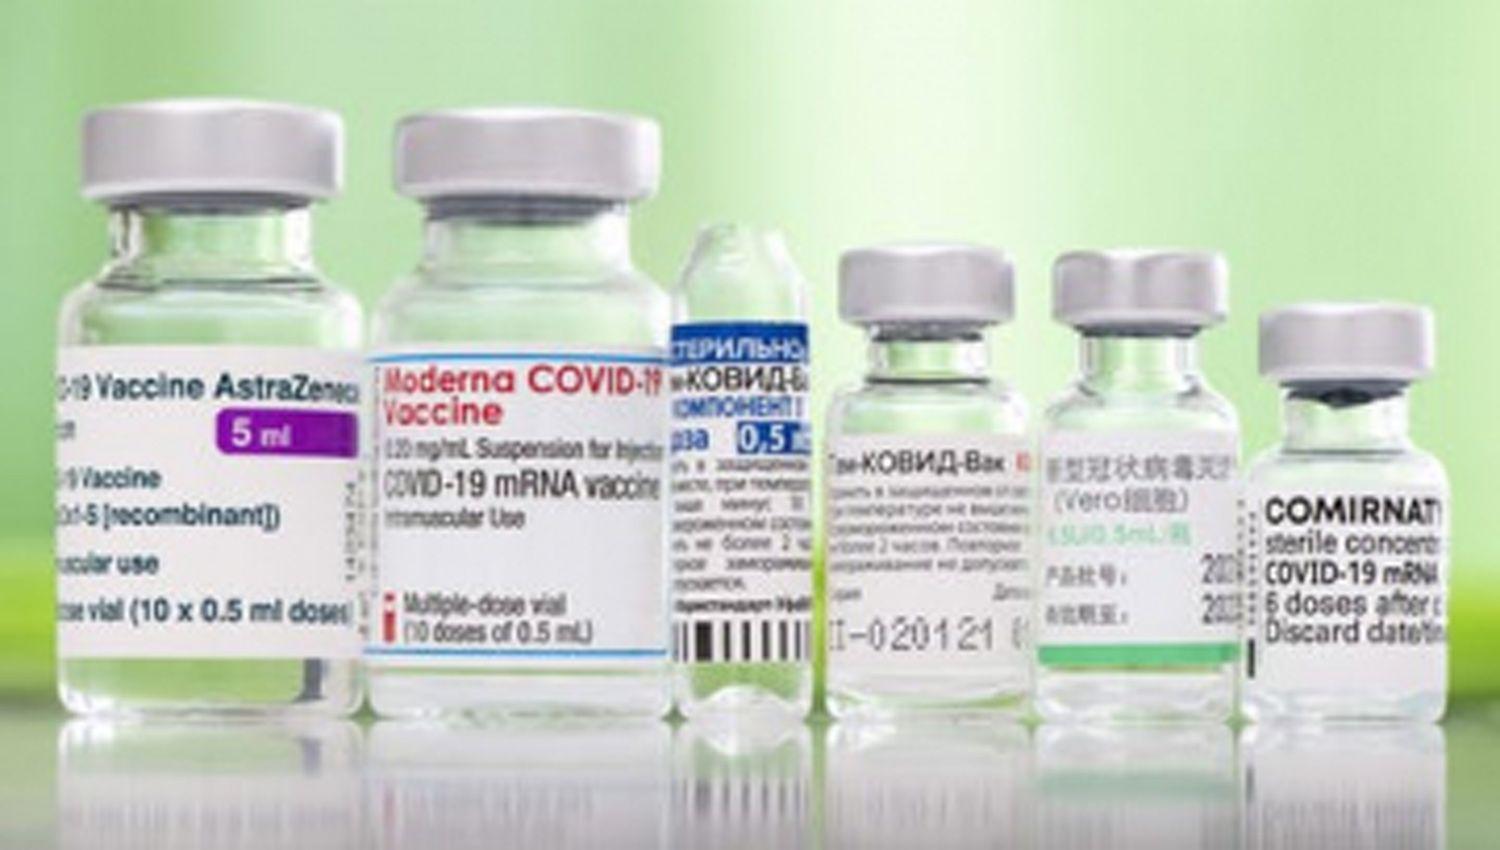 El Ministerio de Salud convocoacute a investigacioacuten para estudiar esquemas combinados de vacunas contra Covid-19